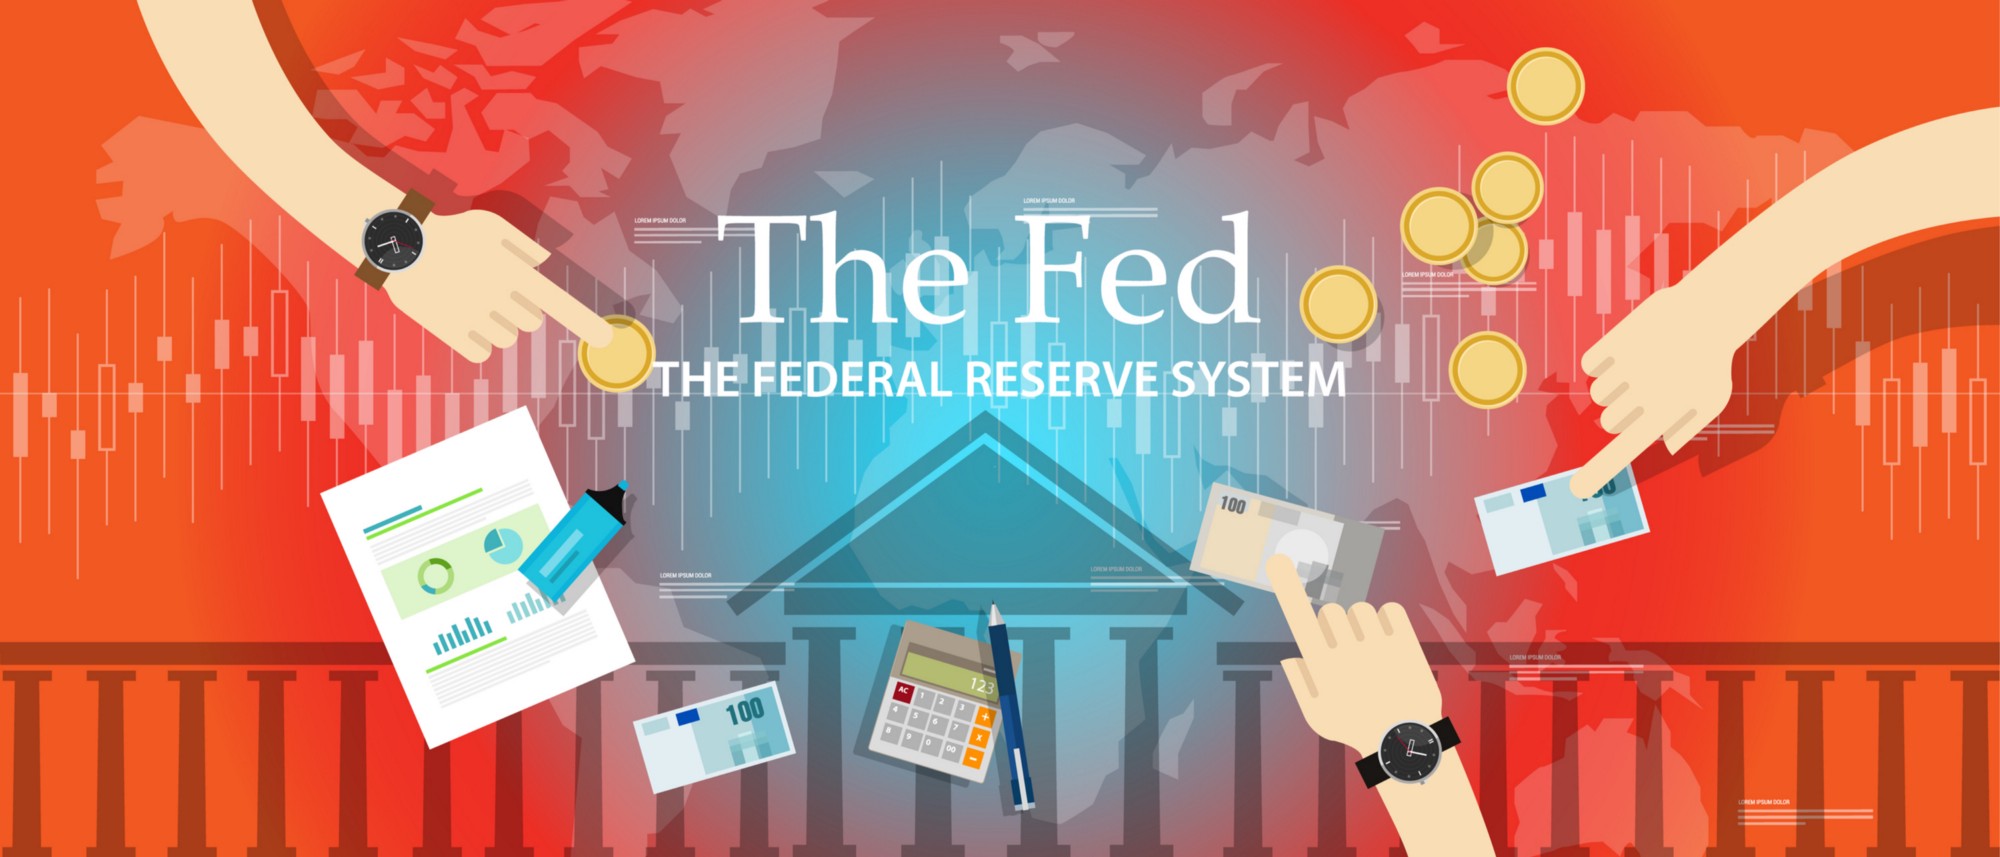 Ba công cụ chính FED sử dụng để tác động đến chính sách tiền tệ.